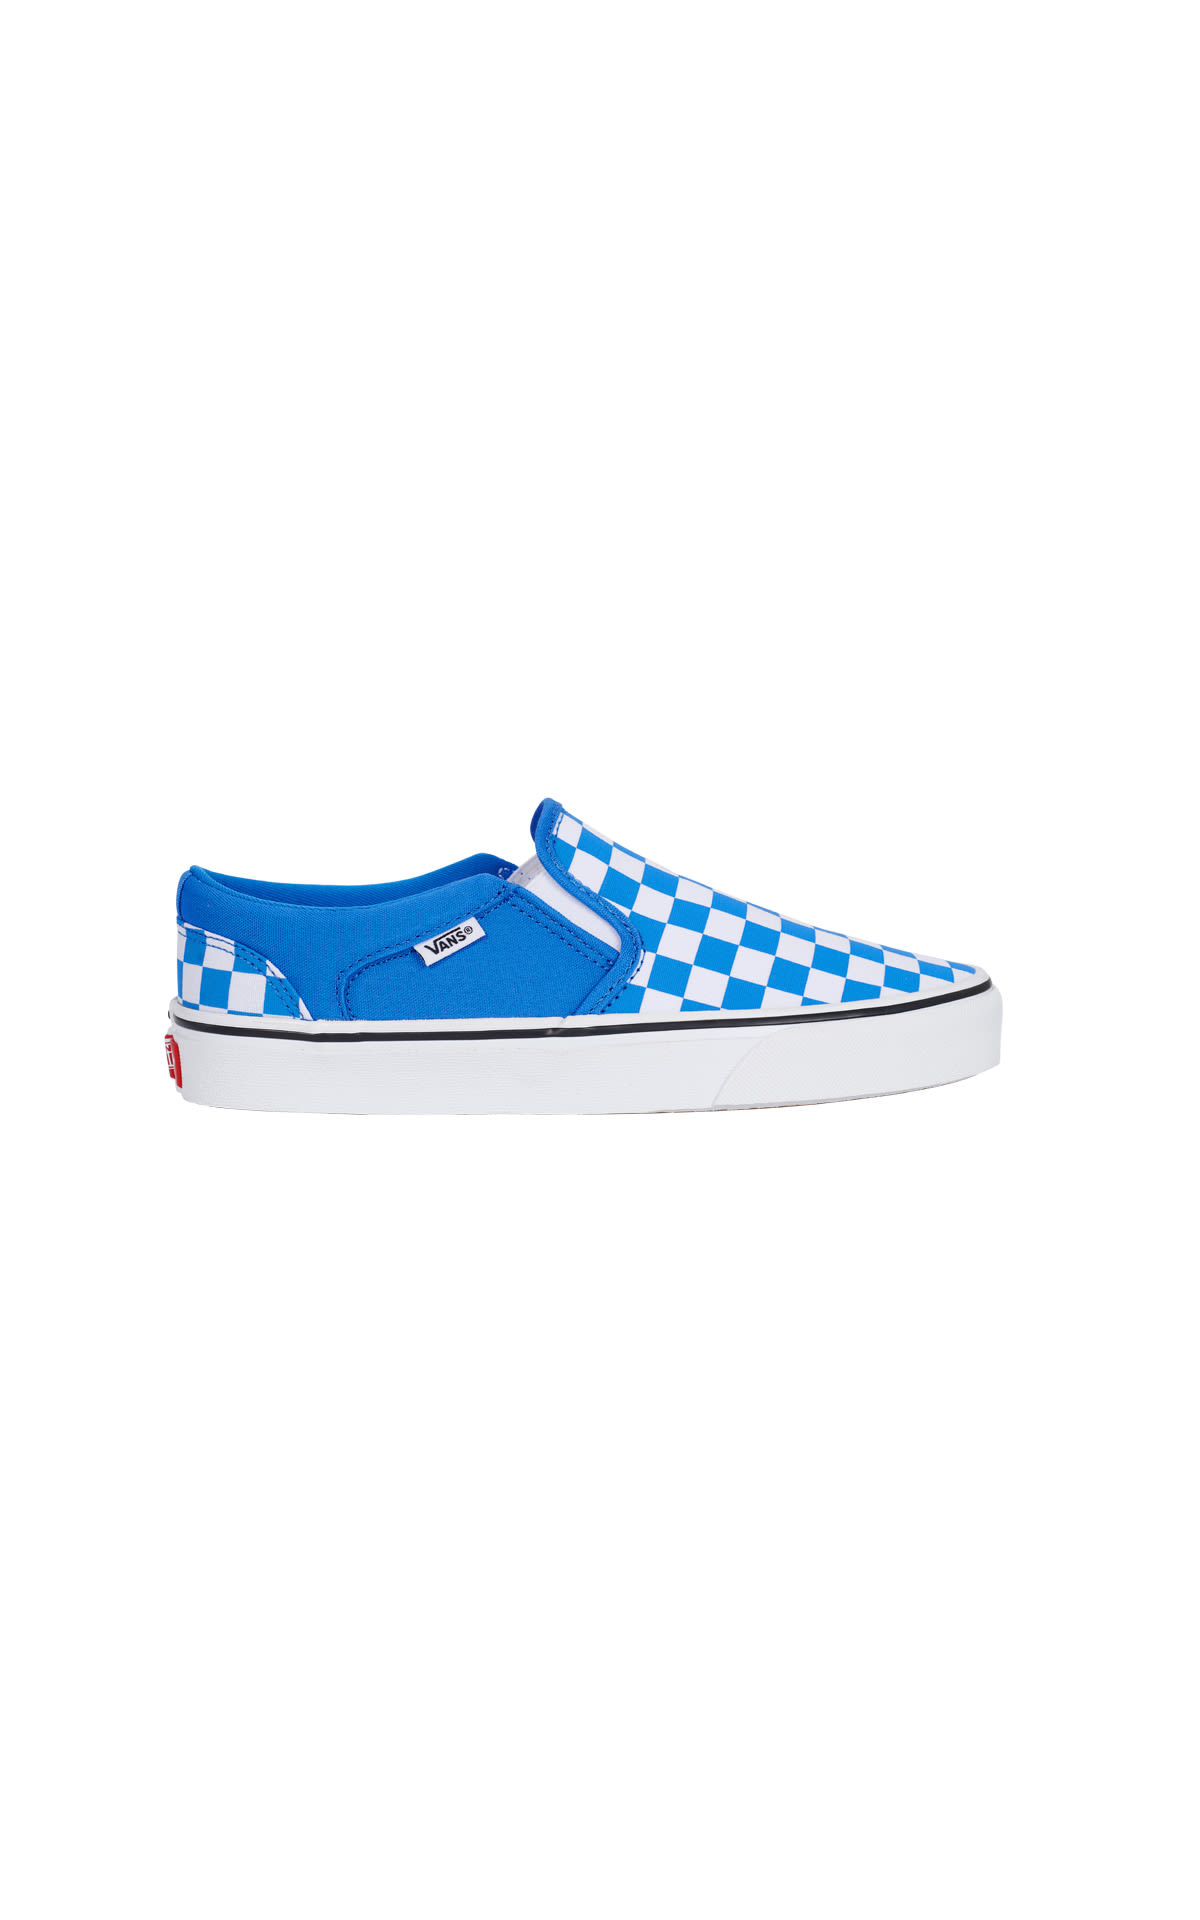 royale  blue sneakers Vans